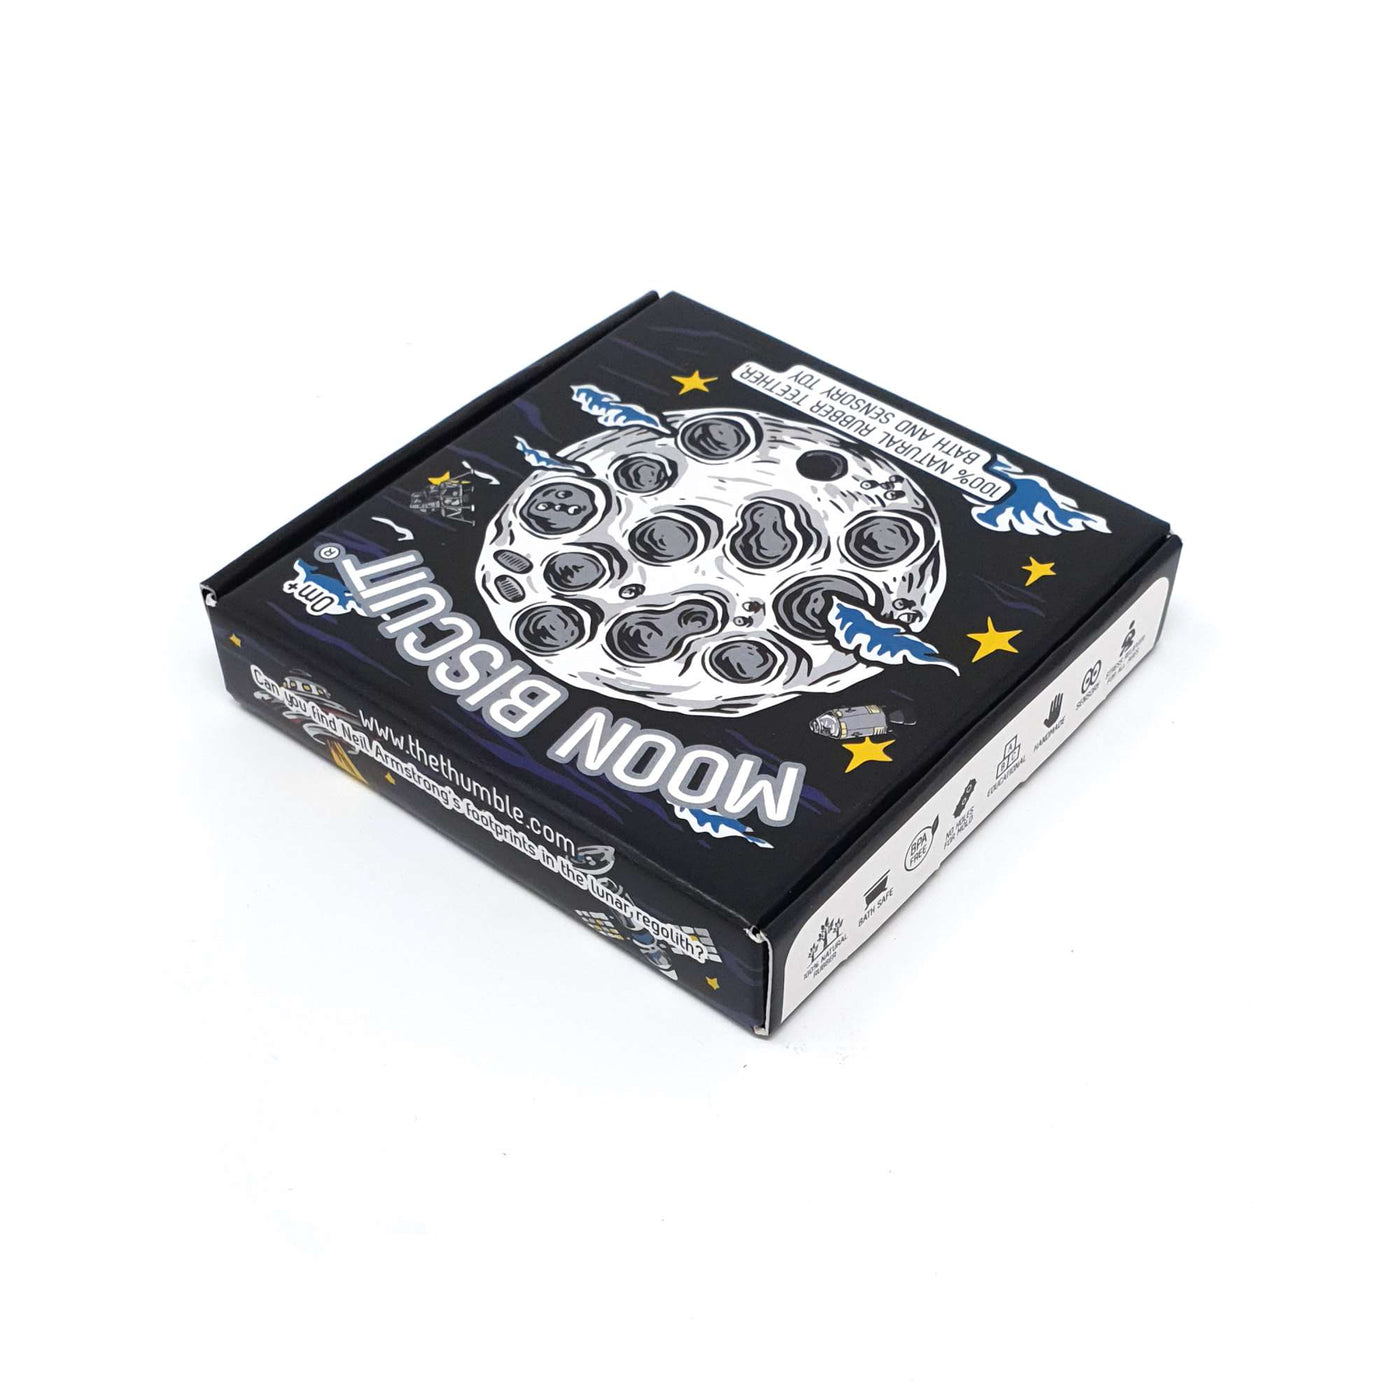 Moon Biscuit teething toys box packaging